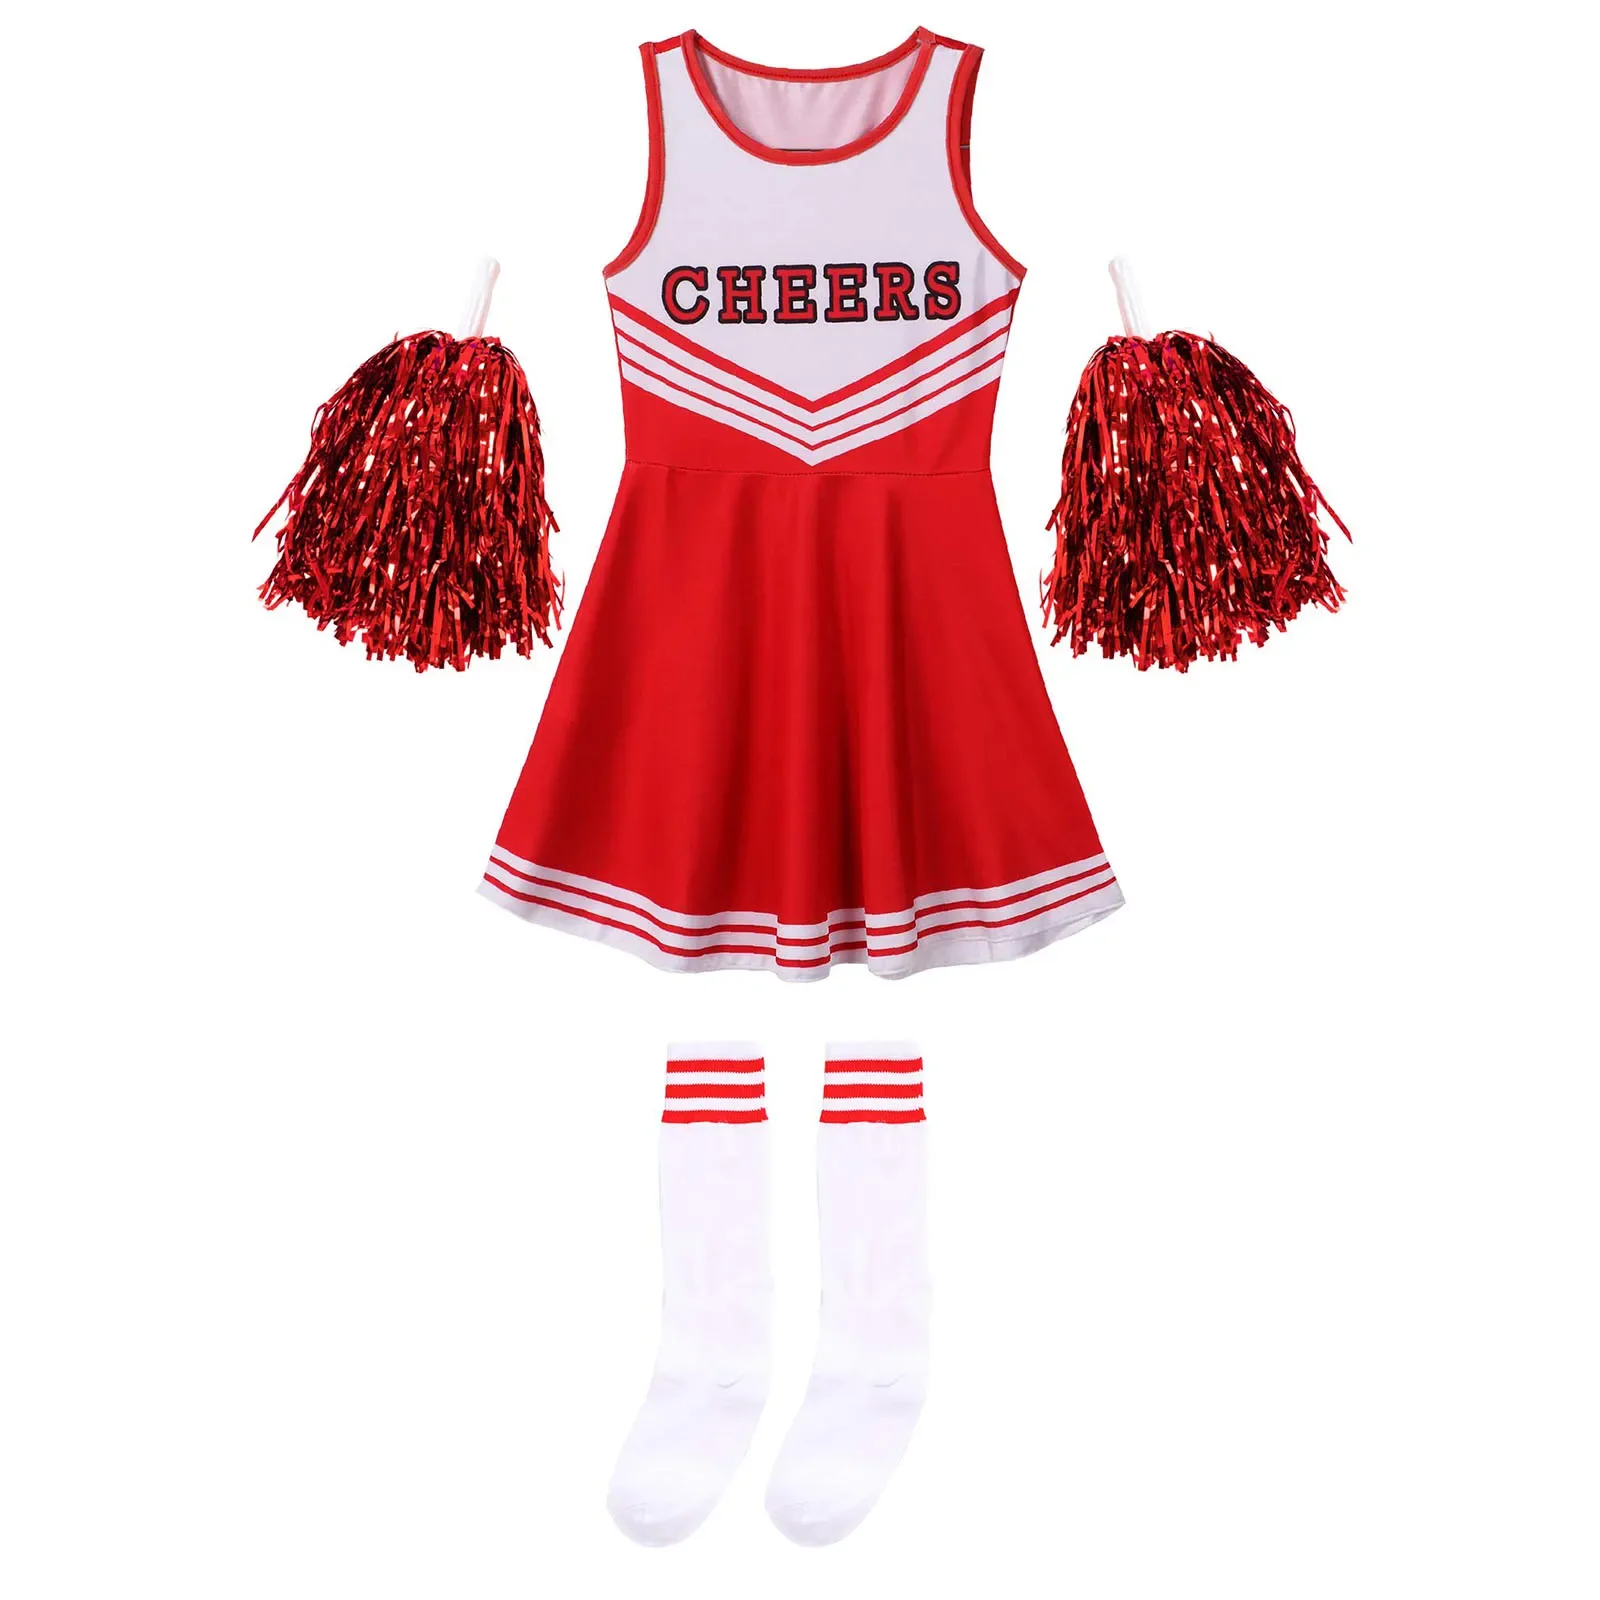 Bambini Cheerleading Costume scuola ragazze Cheerleader uniformi Cheer Dance outfit per Halloween Cosplay Dress con calzini fiore